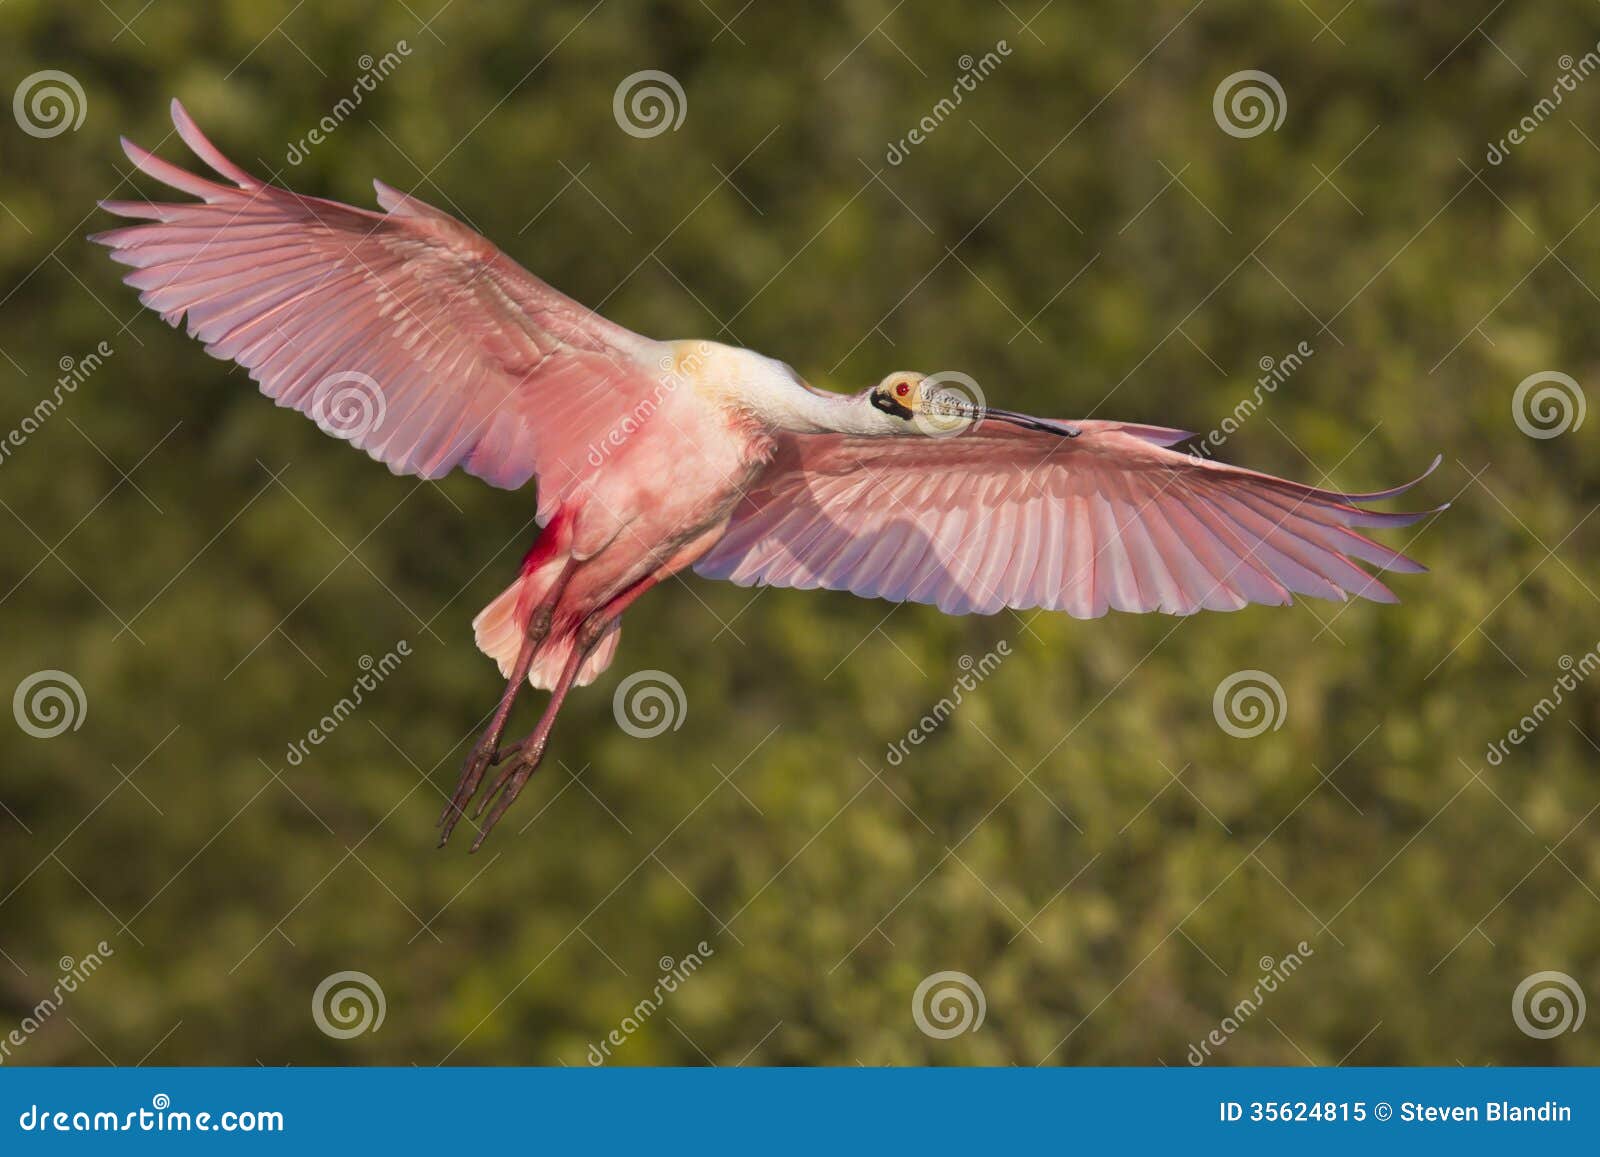 roseate spoonbill in flight